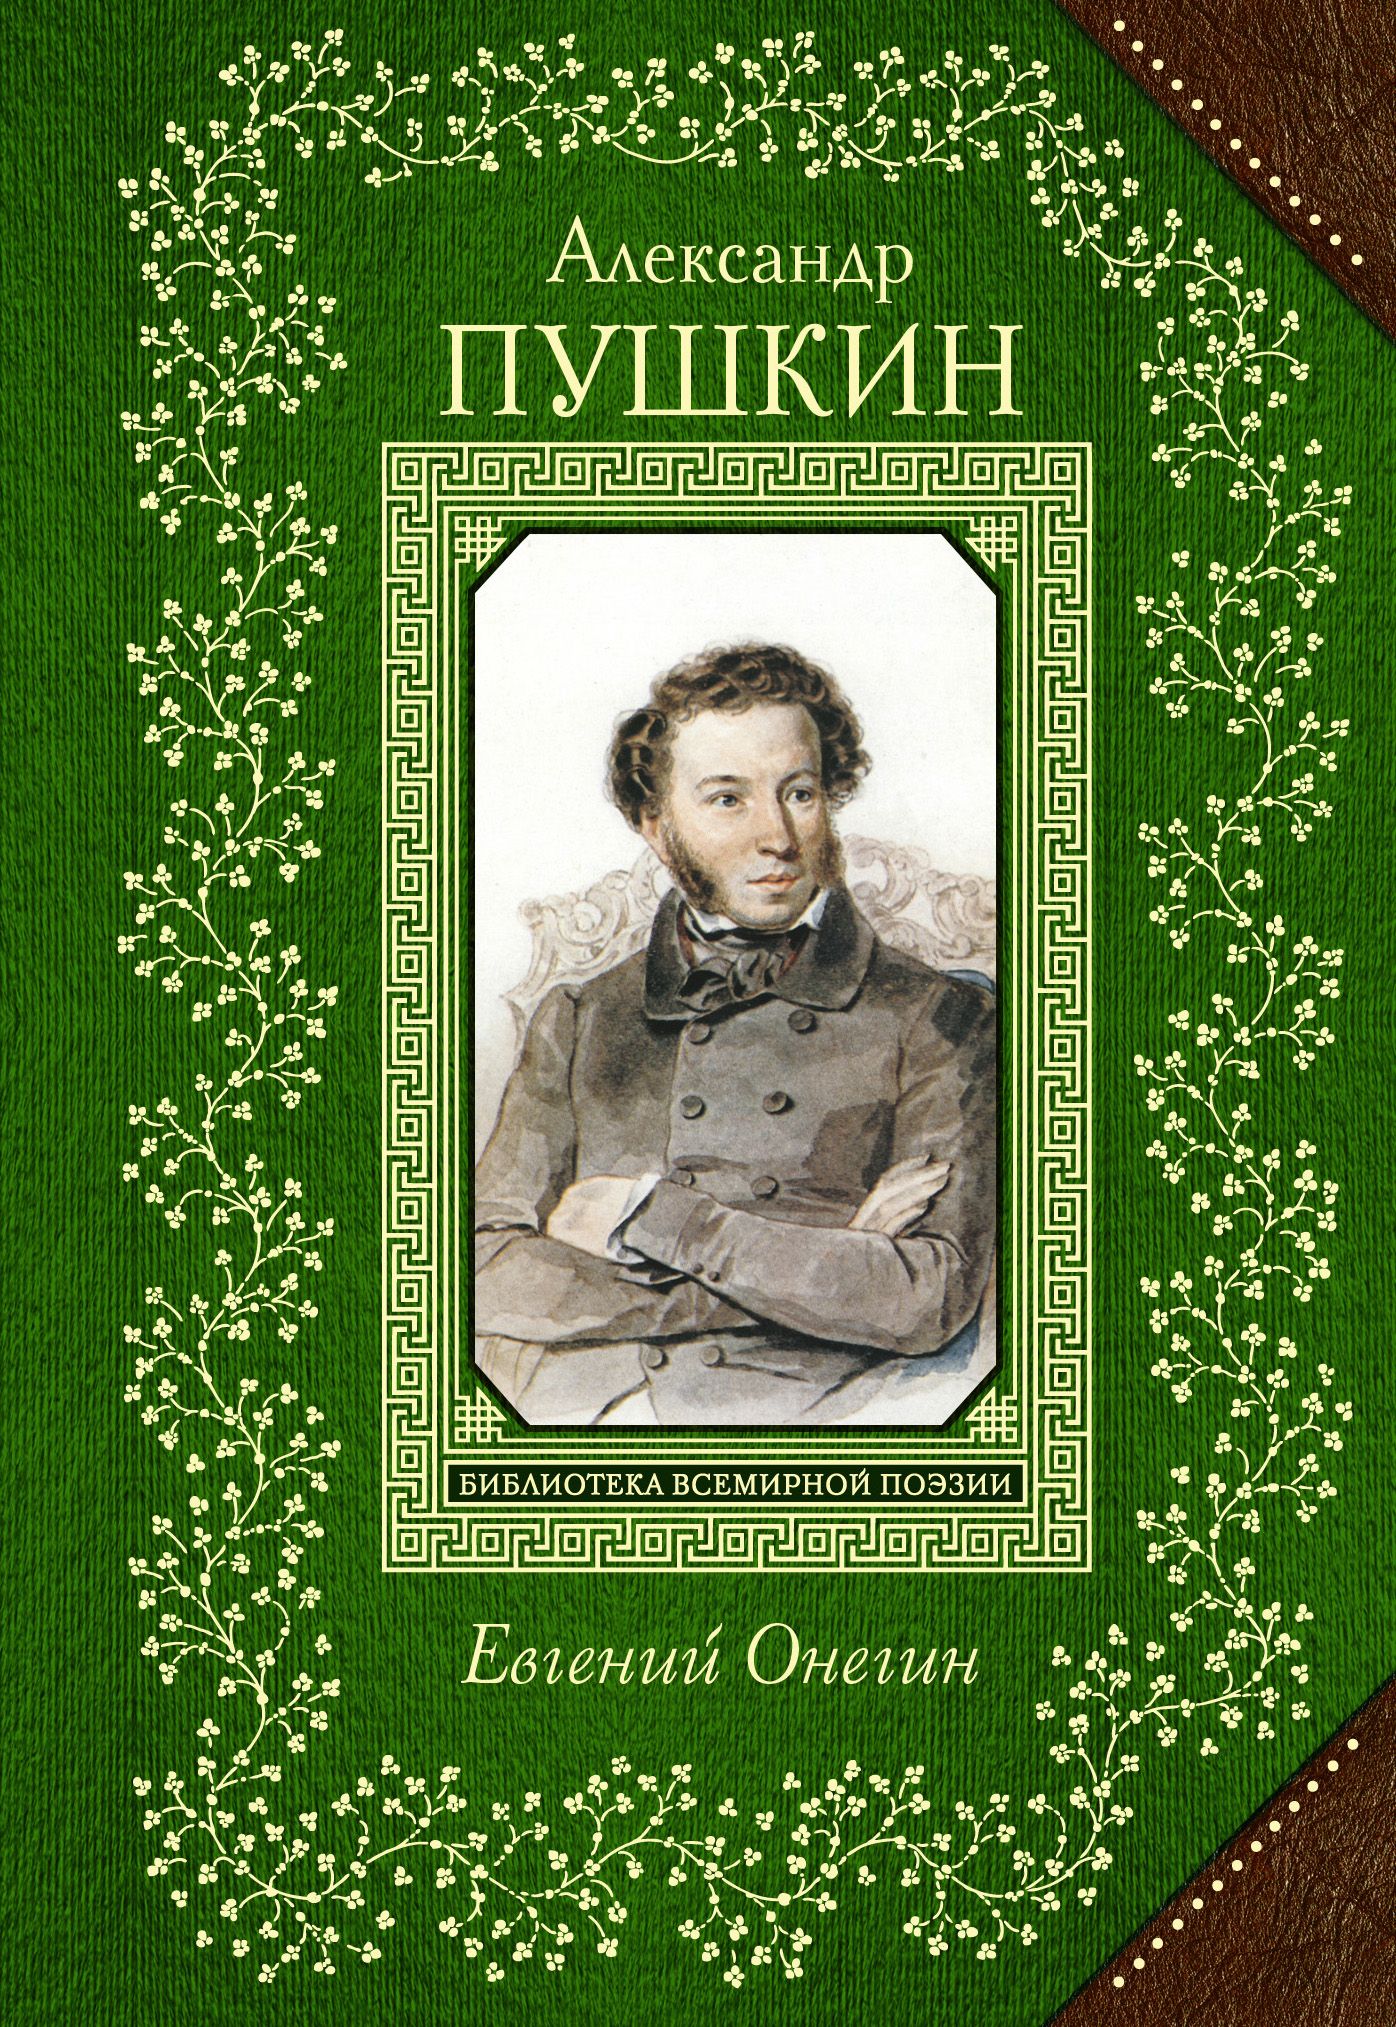 Книги писатель пушкин. Обложки книг Пушкина.